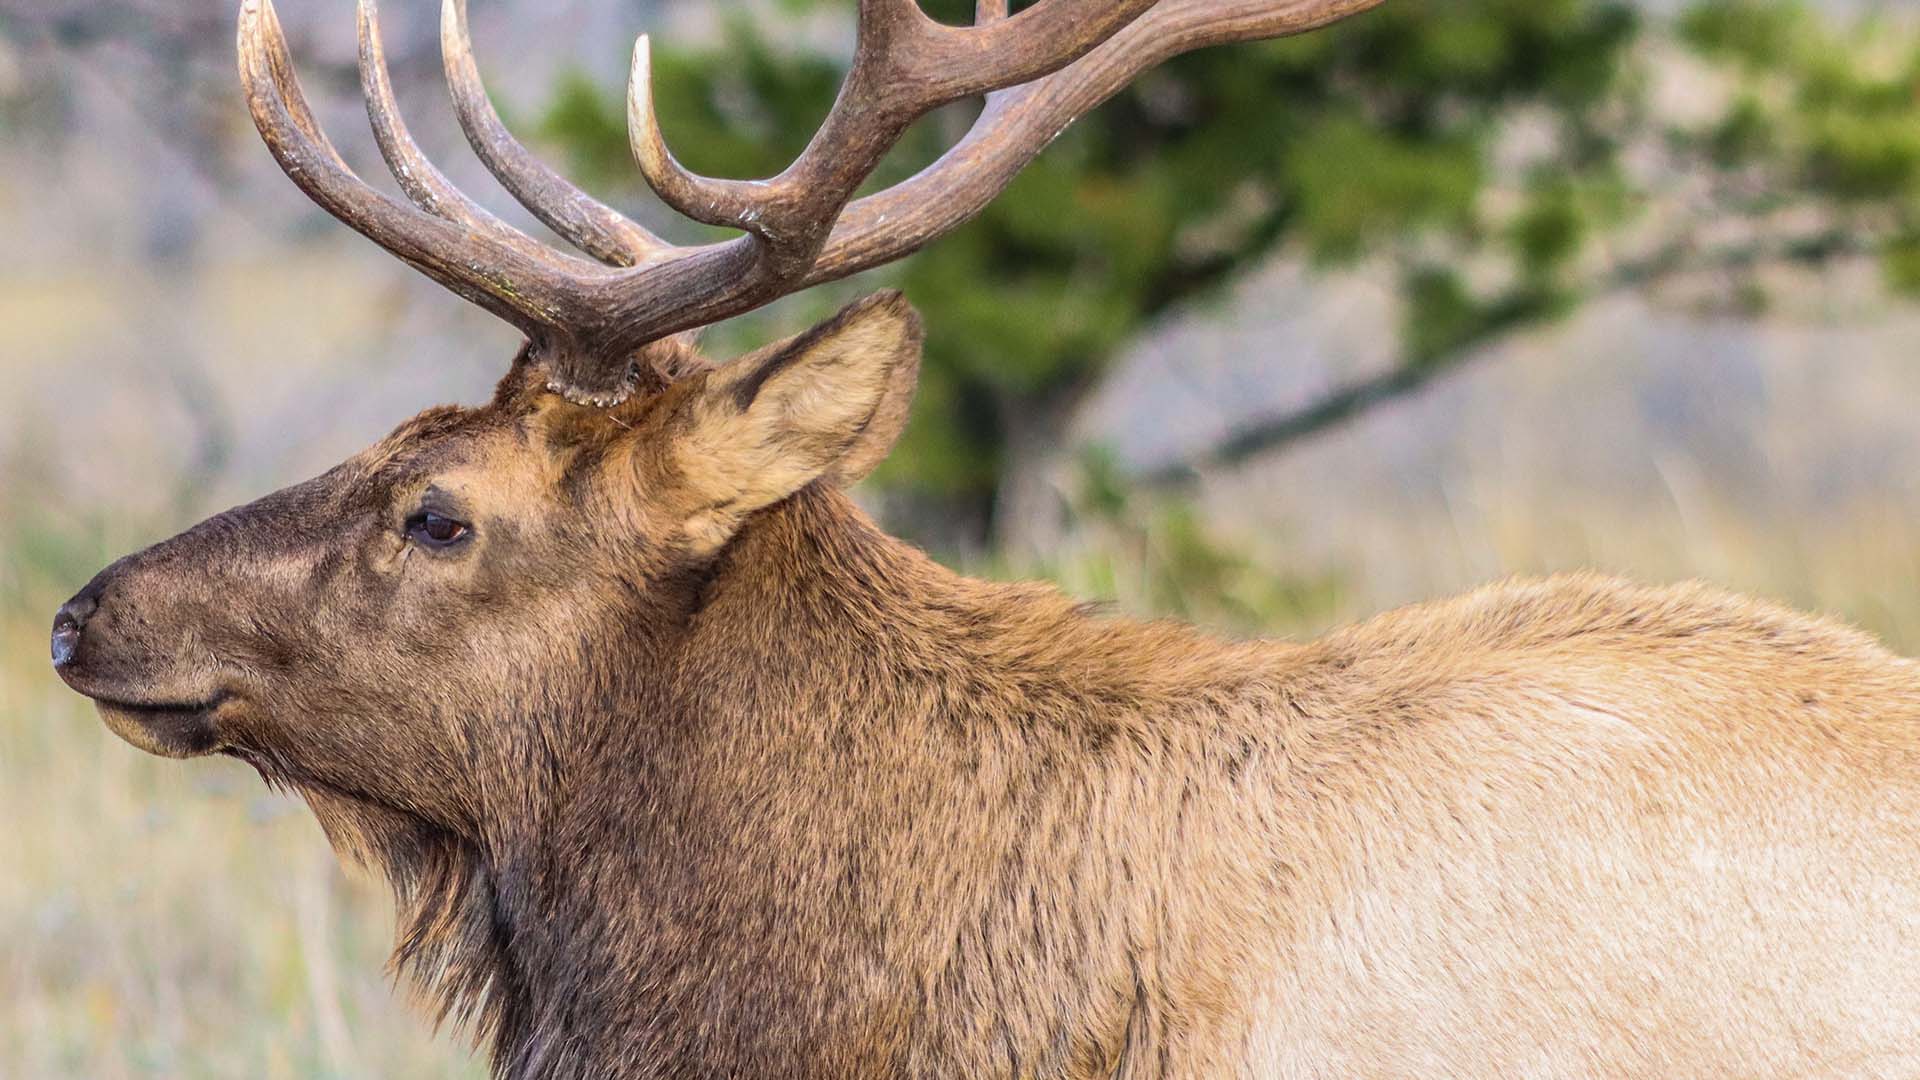 Selon l'entente, les mesures mises en place pourraient permettre «d'atteindre un pourcentage de 65 % d'habitat non perturbé» dans chacune des aires de répartition du caribou.